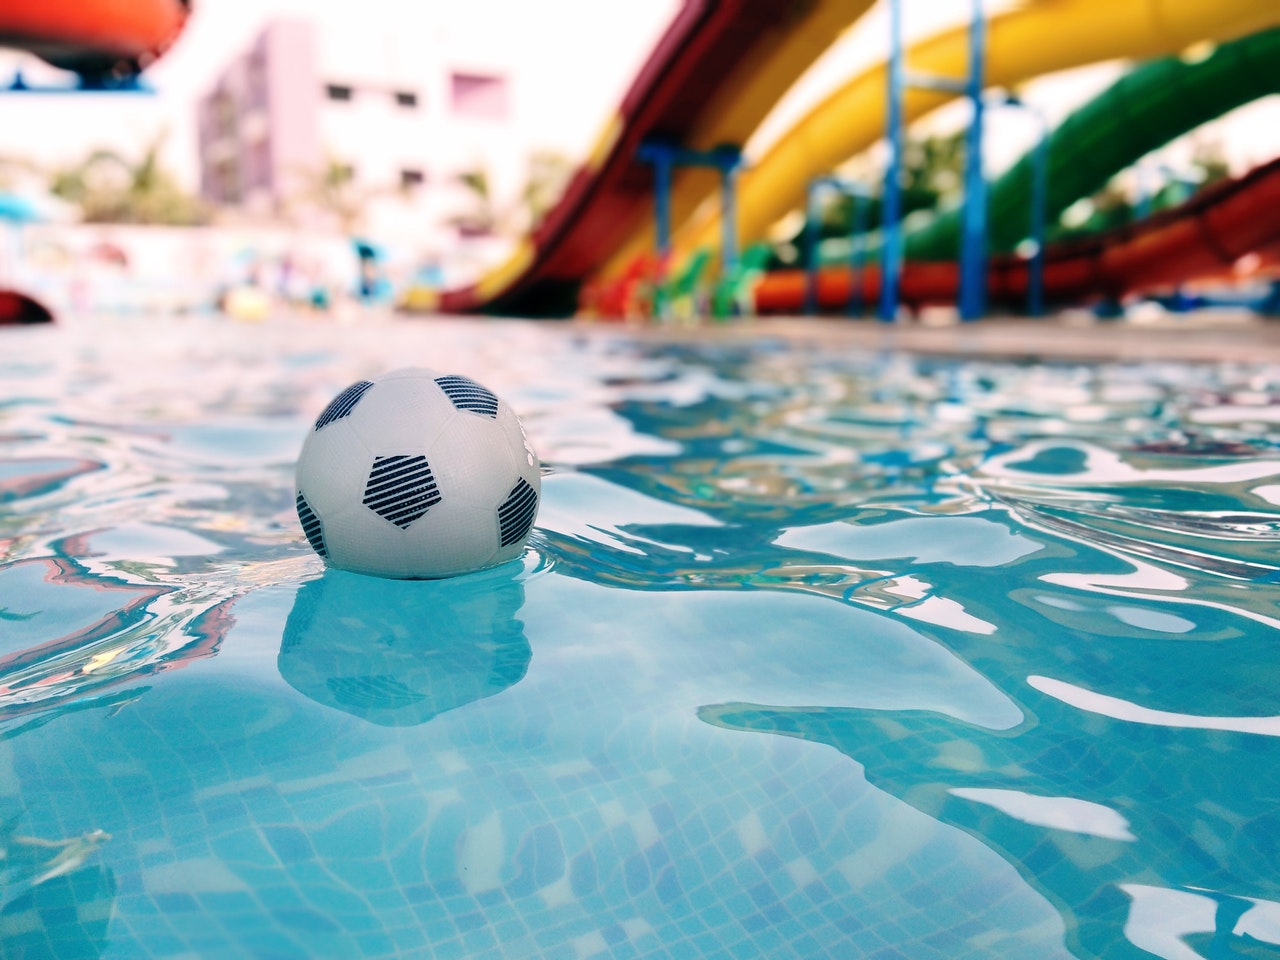 Siempre pensamos en los flotadores, las pelotas... pero pocas veces consideramos hacernos con un tobogán para nuestra piscina particular